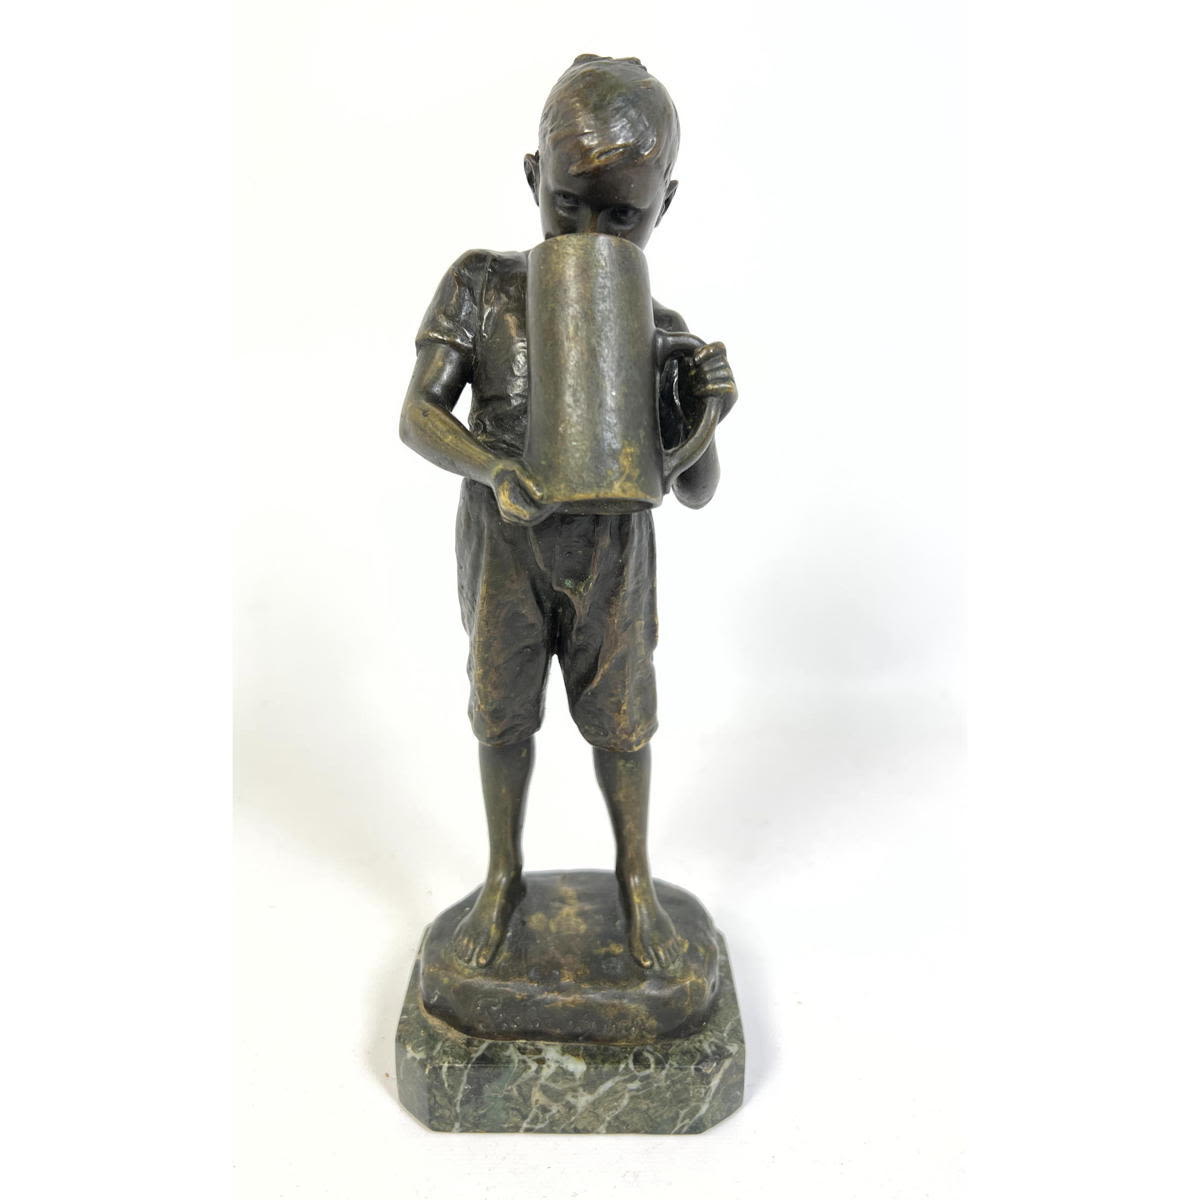 KARL HACKSTOCK bronze statue. Probeschluck.